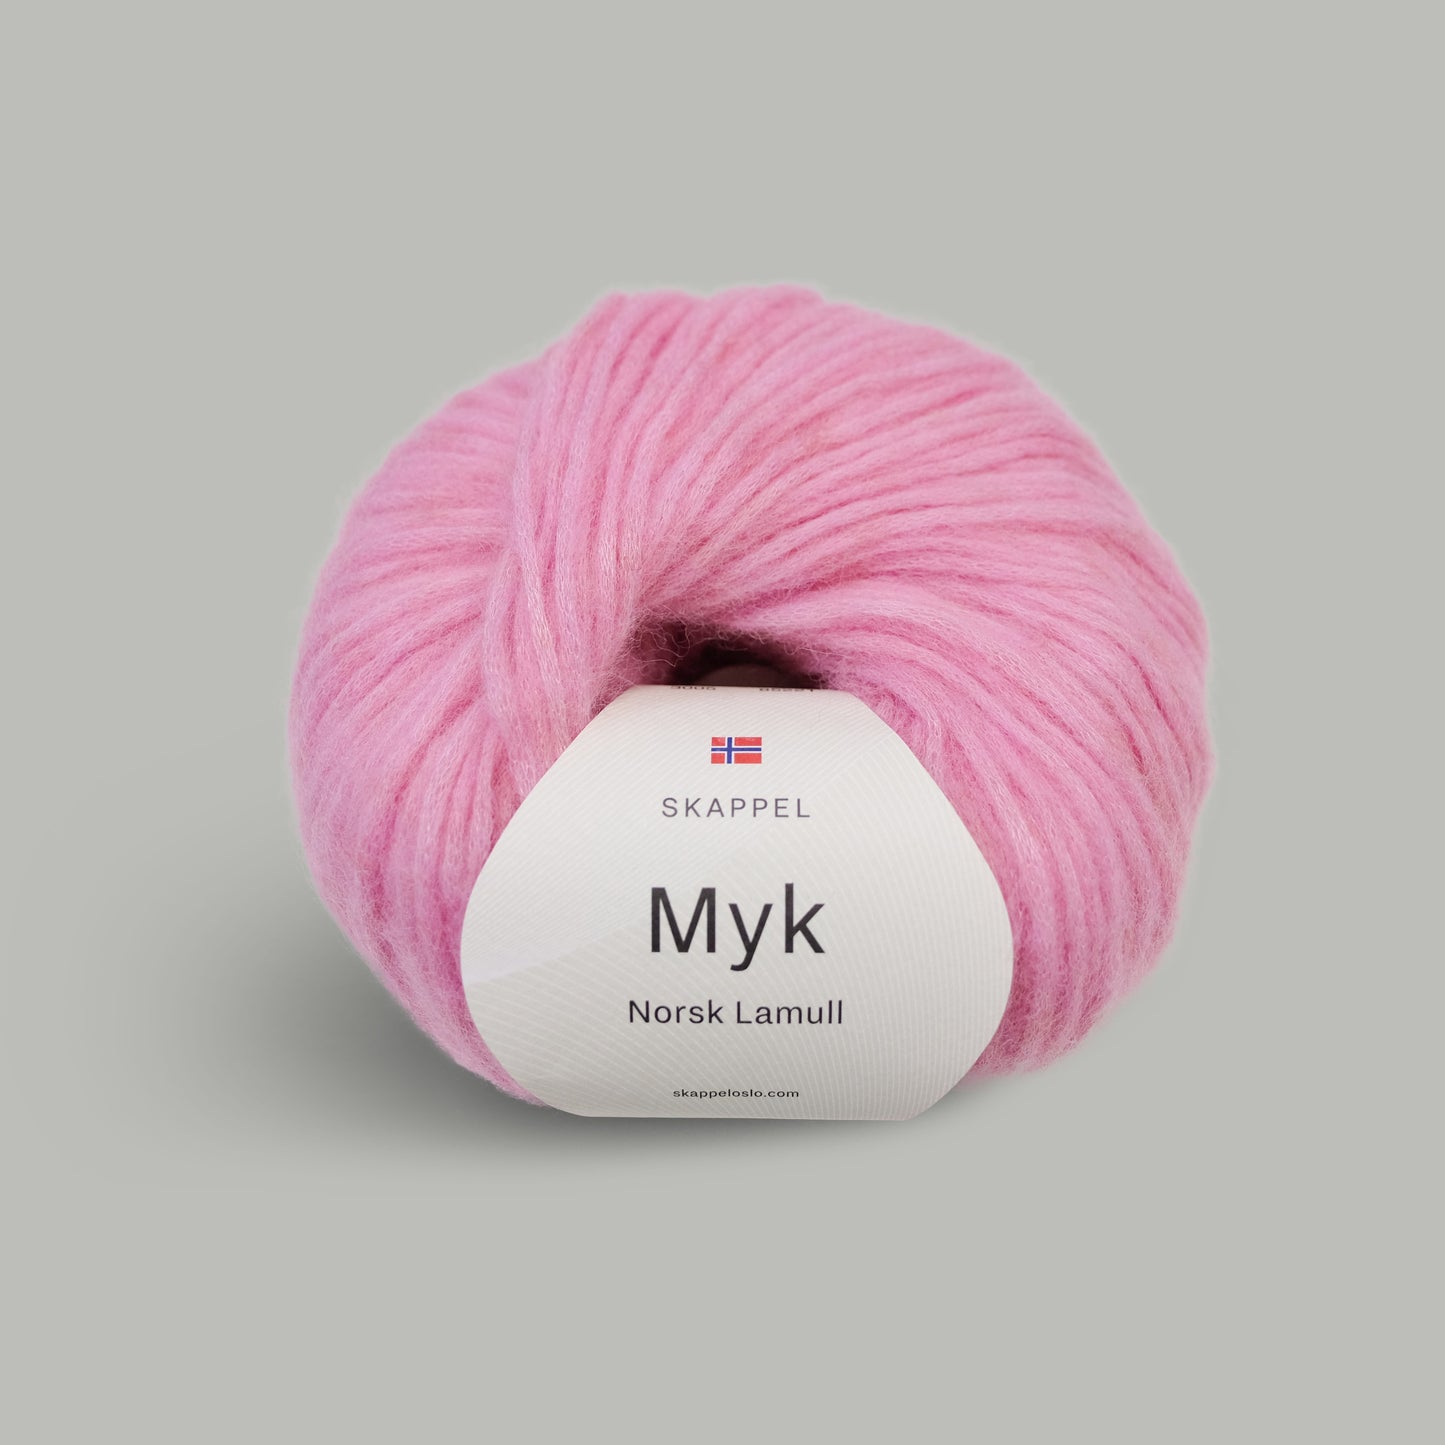 Myk Norsk Lamull | Skappel - Utgående produkt